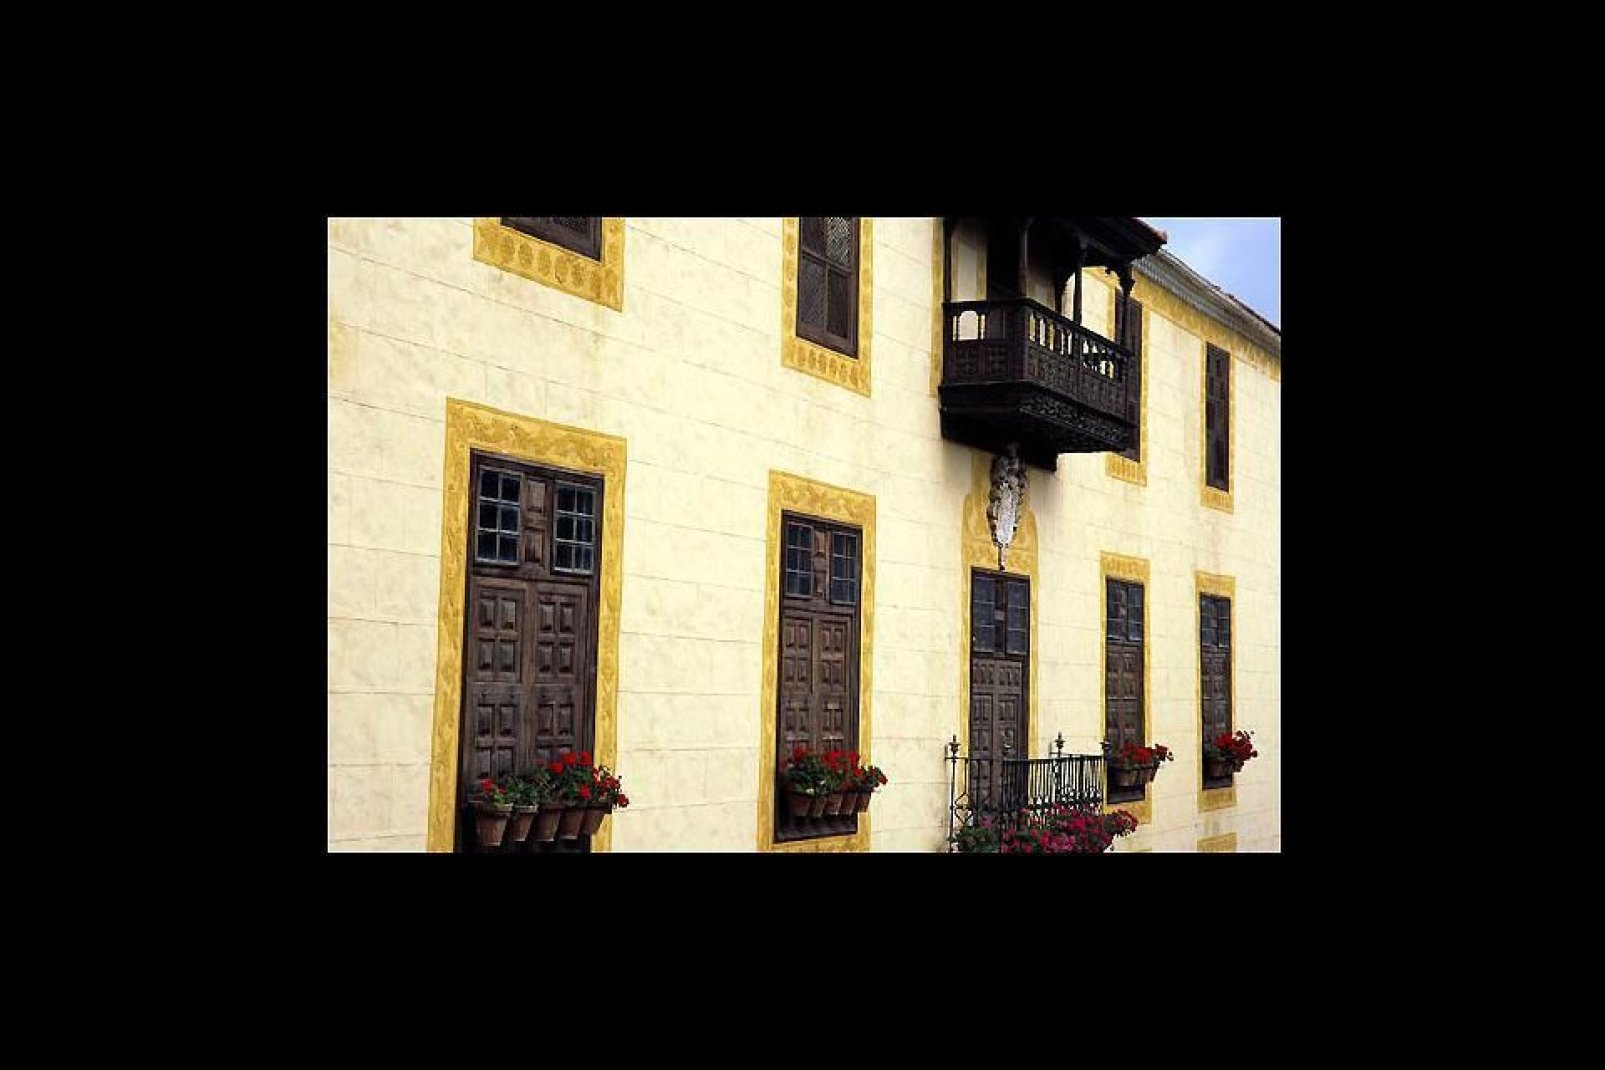 Construida en 1632, es la más emblemática de las casas tradicionales con balcones de La Orotava.